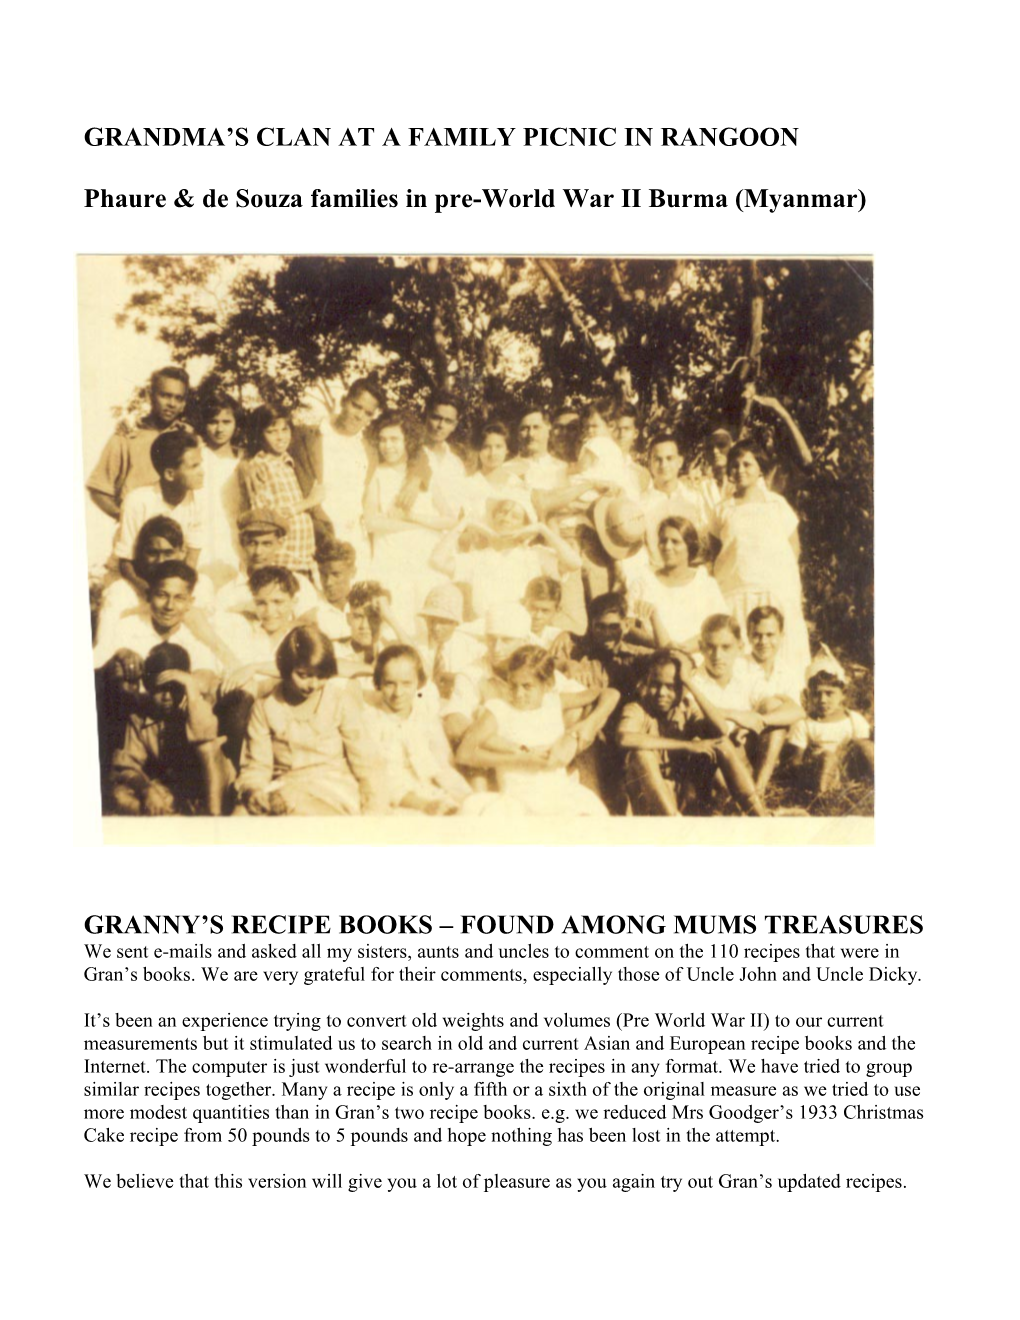 Phaure & De Souza Families in Pre-World War II Burma (Myanmar)